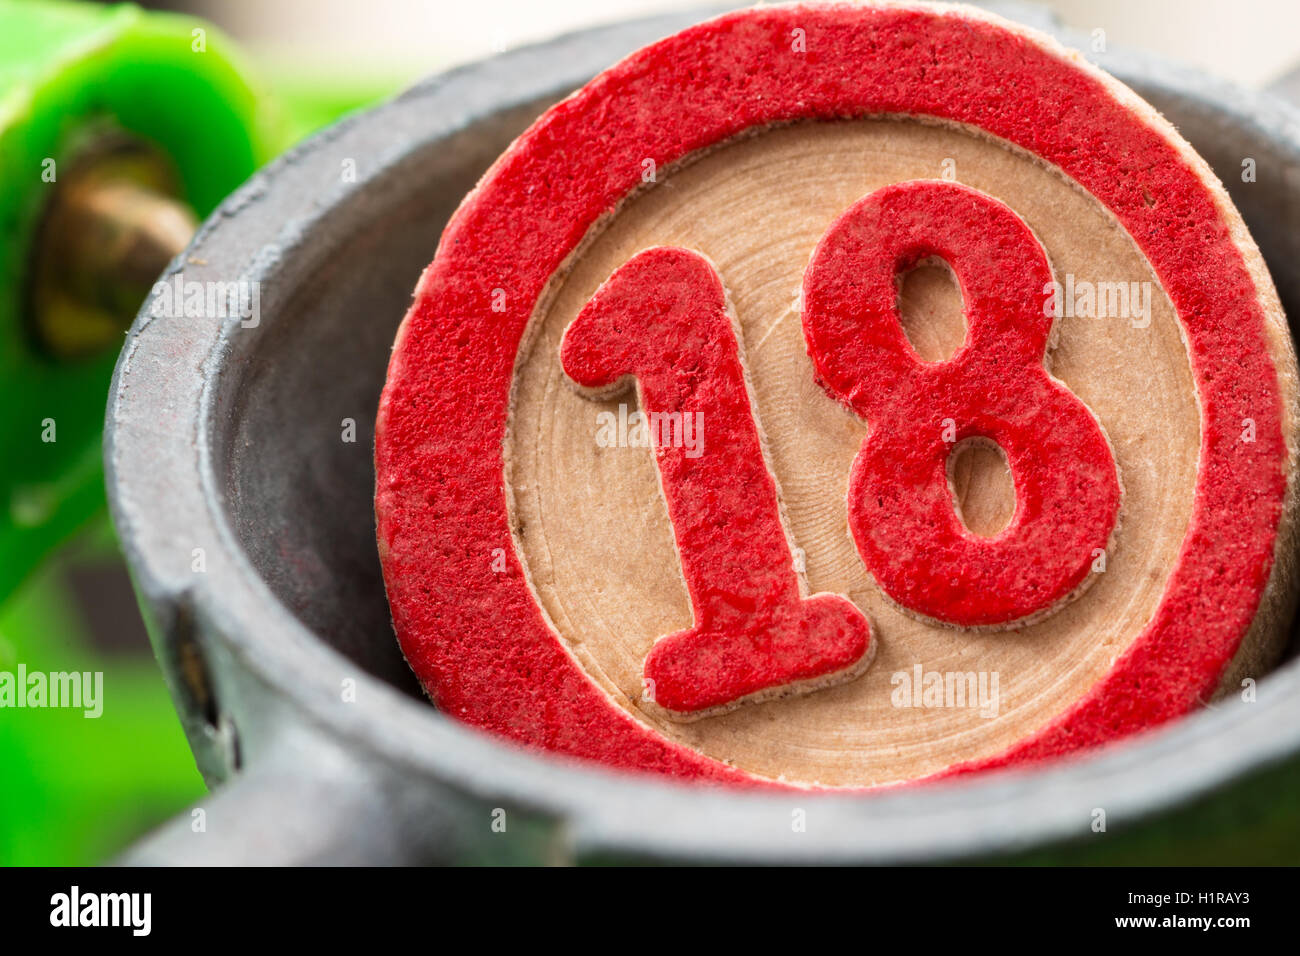 eighteen, bingo number Stock Photo